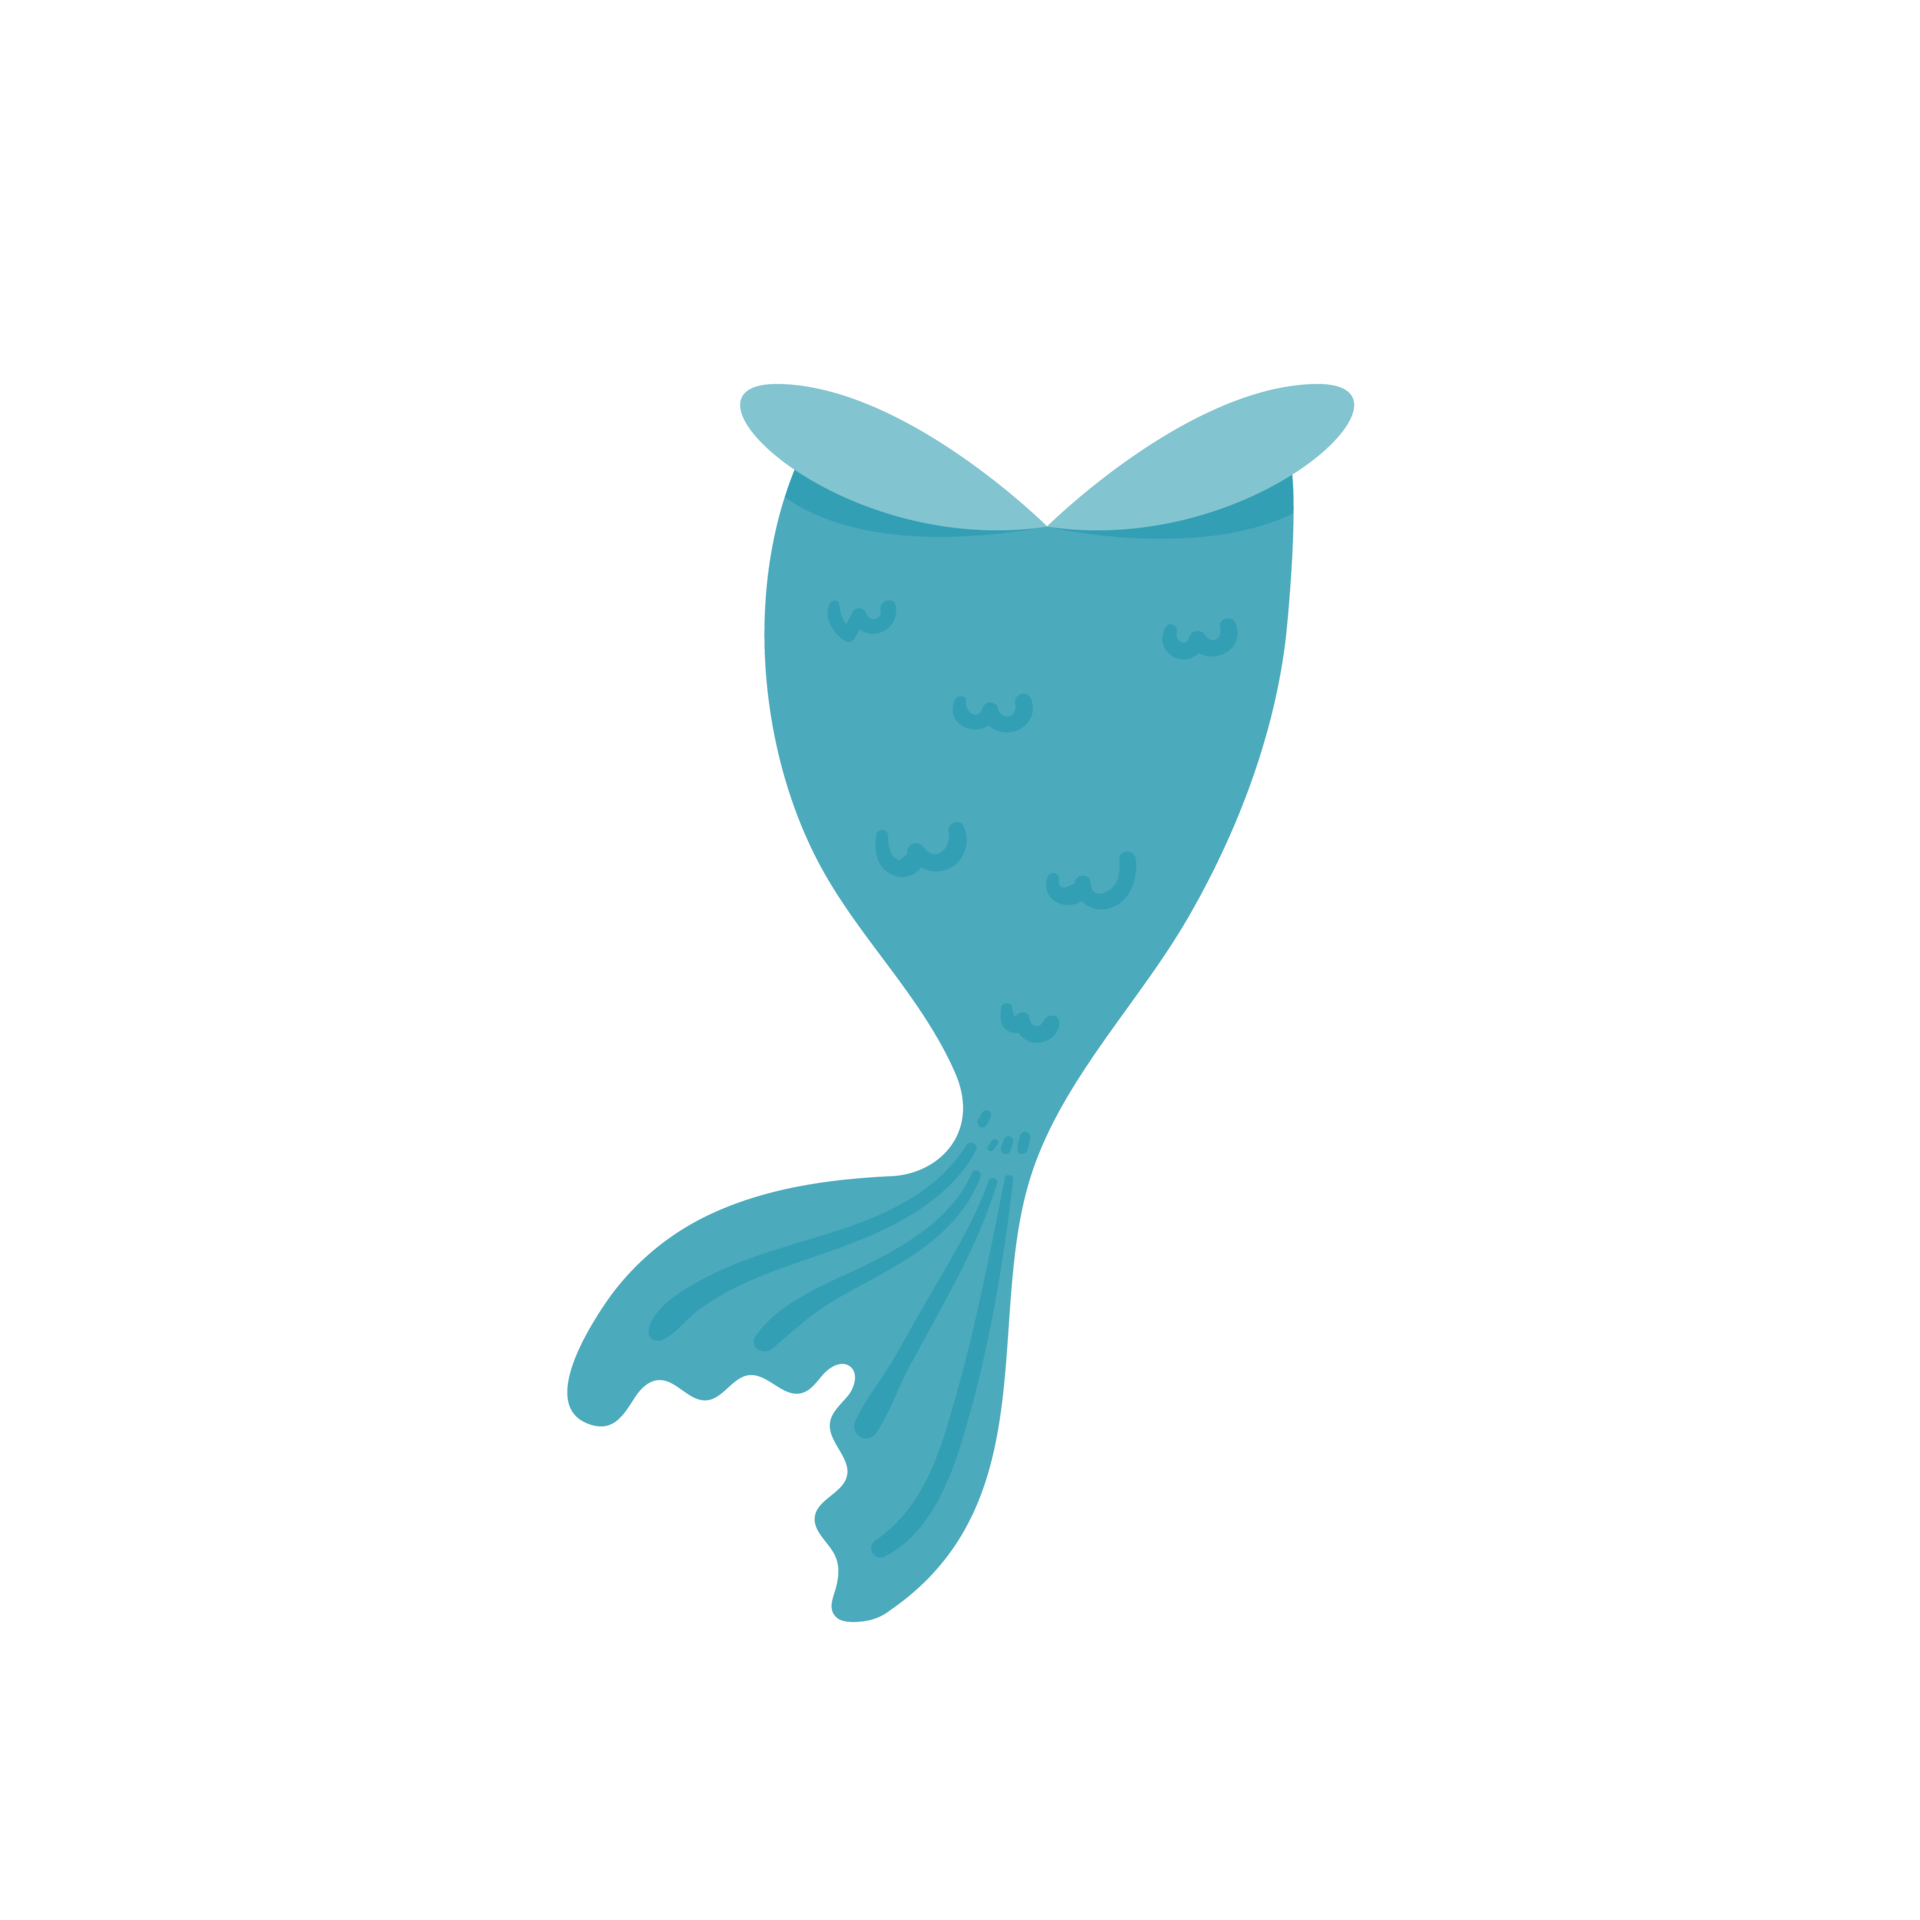 Đuôi tiên cá dưới nước là một trong những hình ảnh đẹp nhất của thế giới dưới nước. Với sự mềm mại, đặc trưng của nó, đuôi tiên cá mang đến một cái nhìn tuyệt vời về thế giới biển cả và đồng thời cũng là biểu tượng của sự độc đáo và năng động.